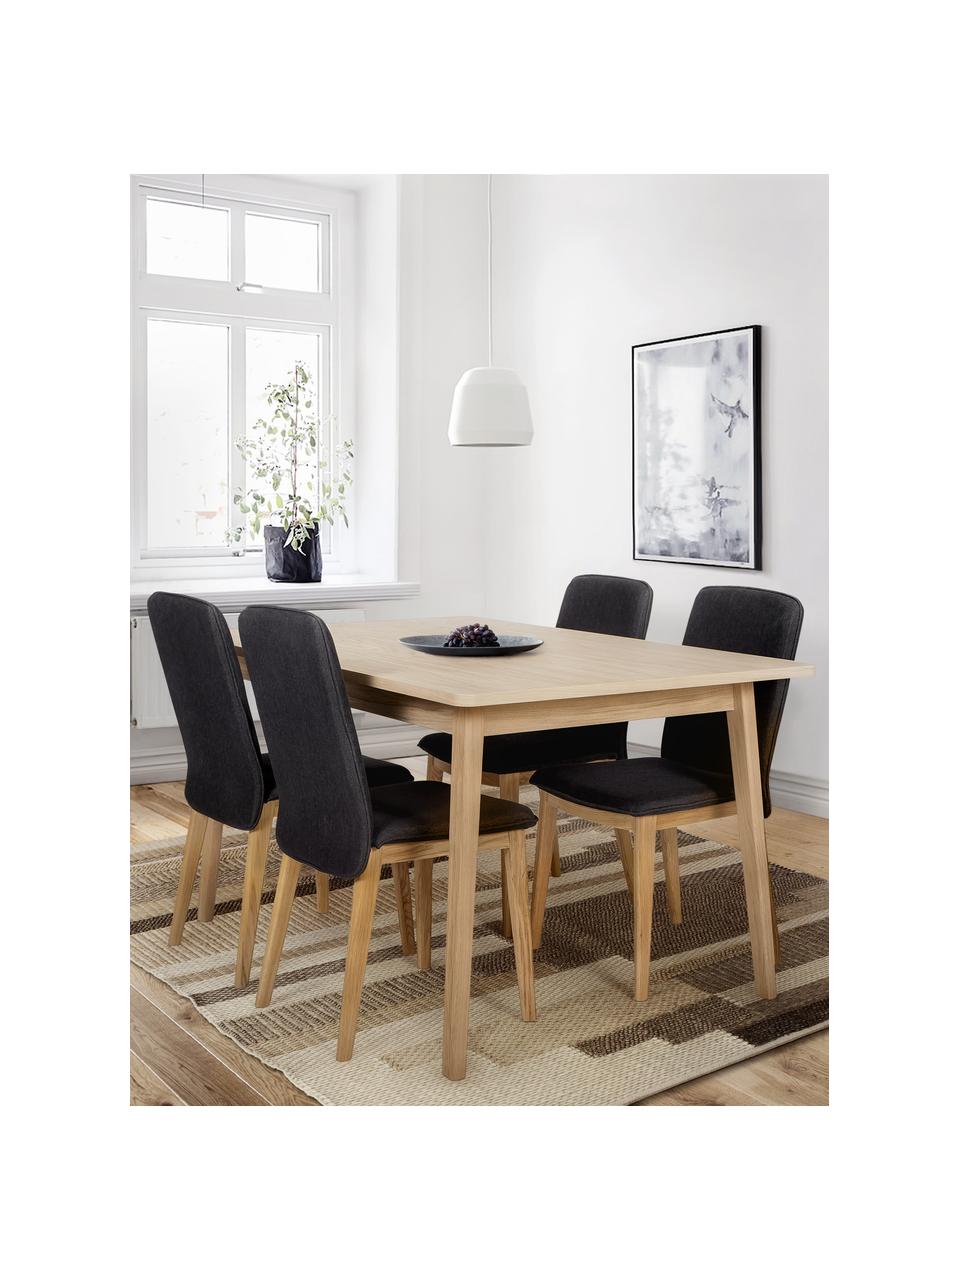 Drevený jedálenský stôl Skagen, 180 x 90 cm, Dubové drevo, Š 180 x H 90 cm